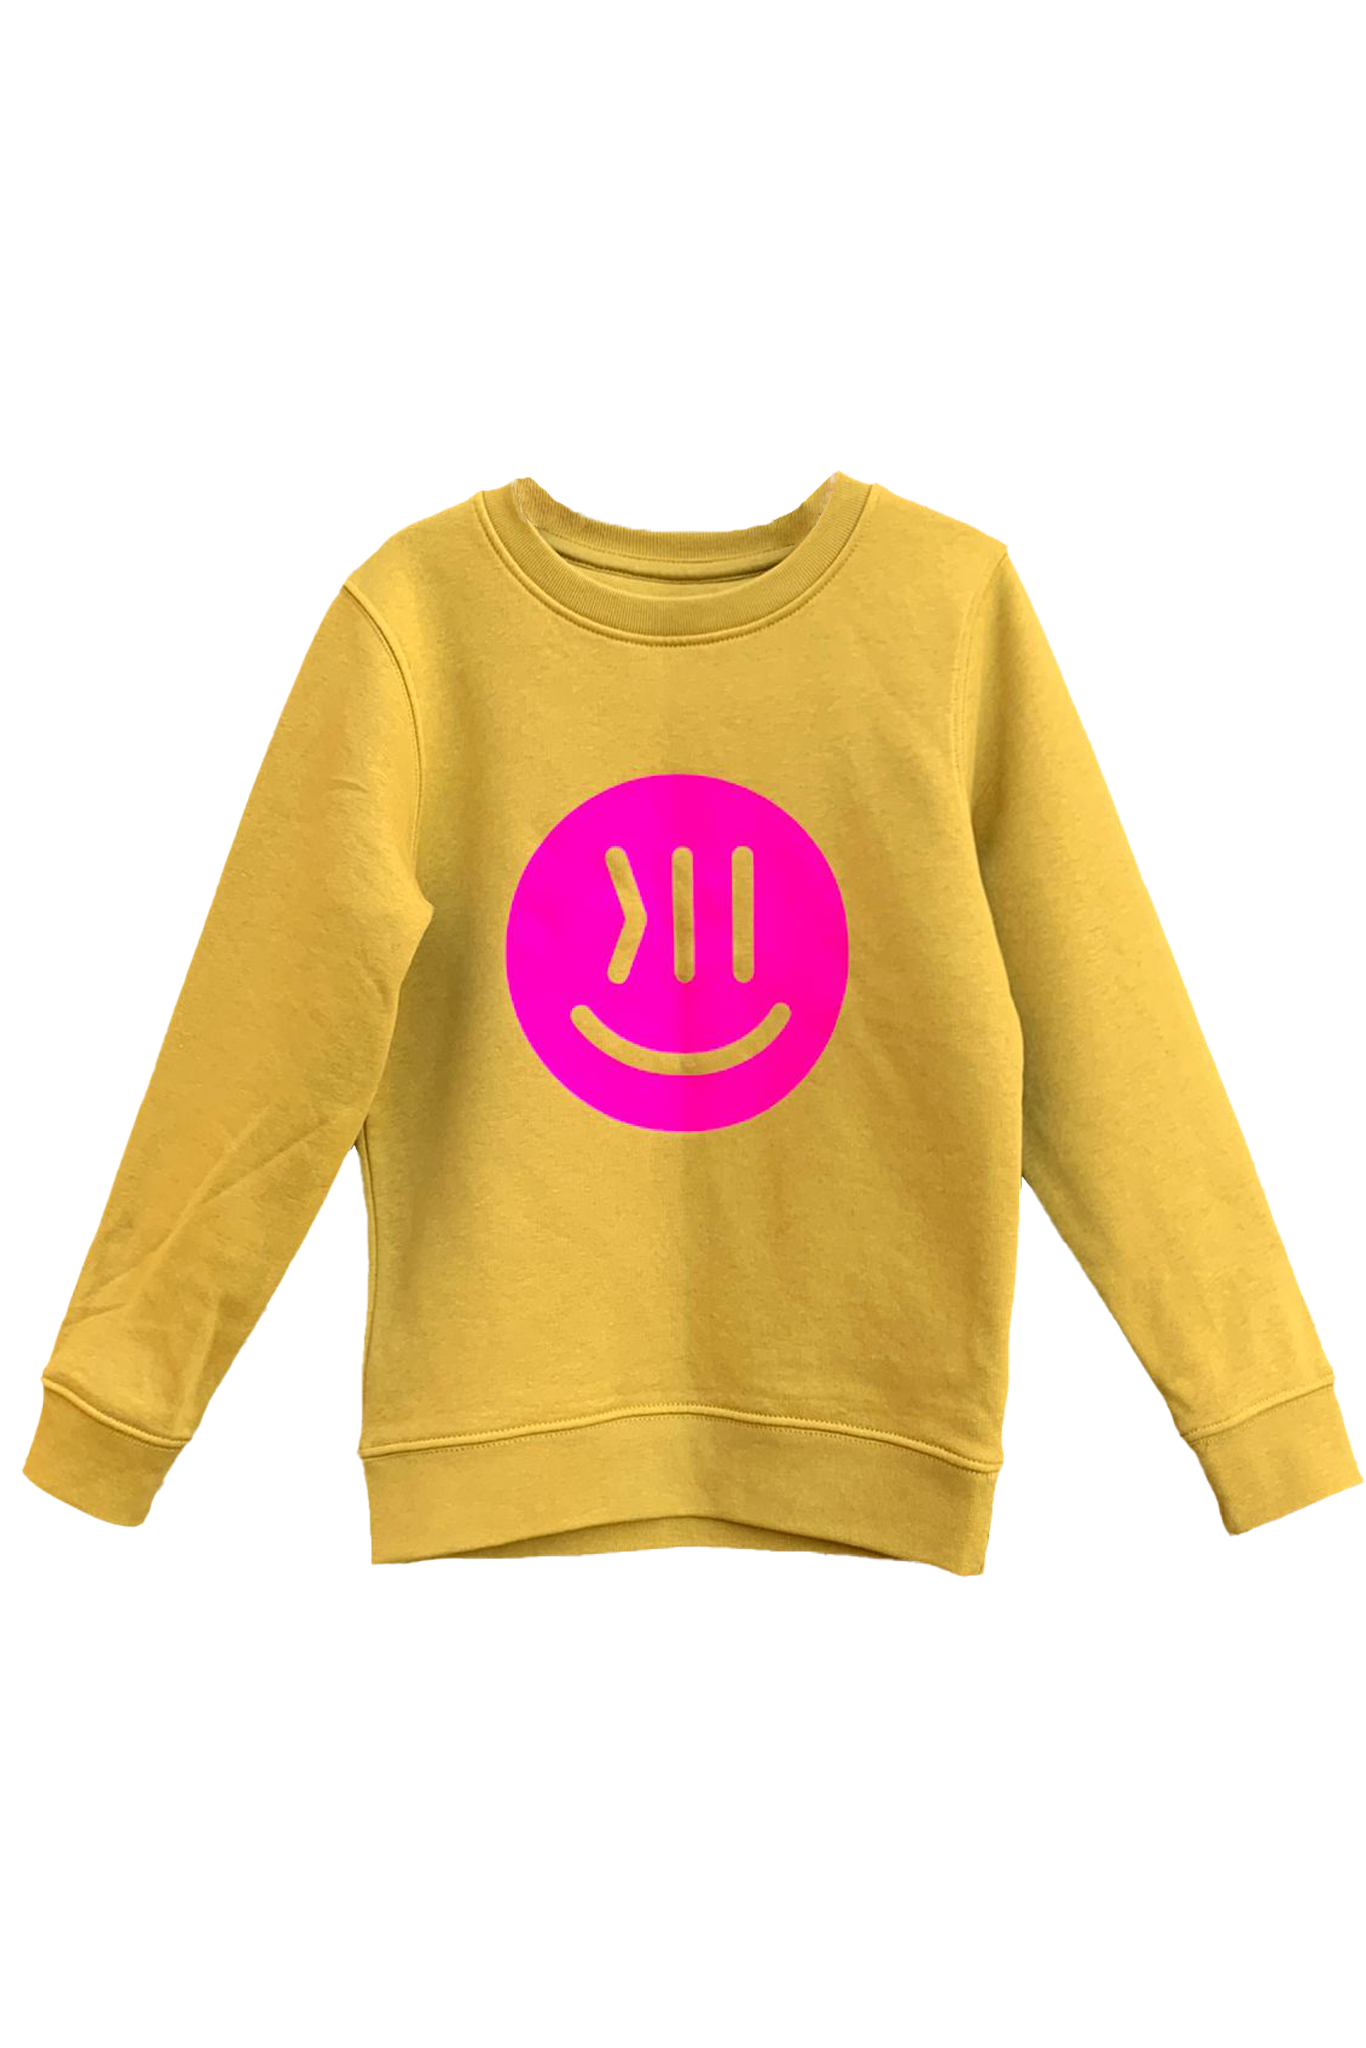 Ein Sweatshirt für Kinder in der Farbe ochre. Der Hintergrund ist weiß. Der Sweater heißt Kim und ist hier von vorne zu sehen. Auf der Brust ist der isociety Smiley in leuchtendem pink zu sehen. Die Farben wirken sehr knallig und lebendig.  